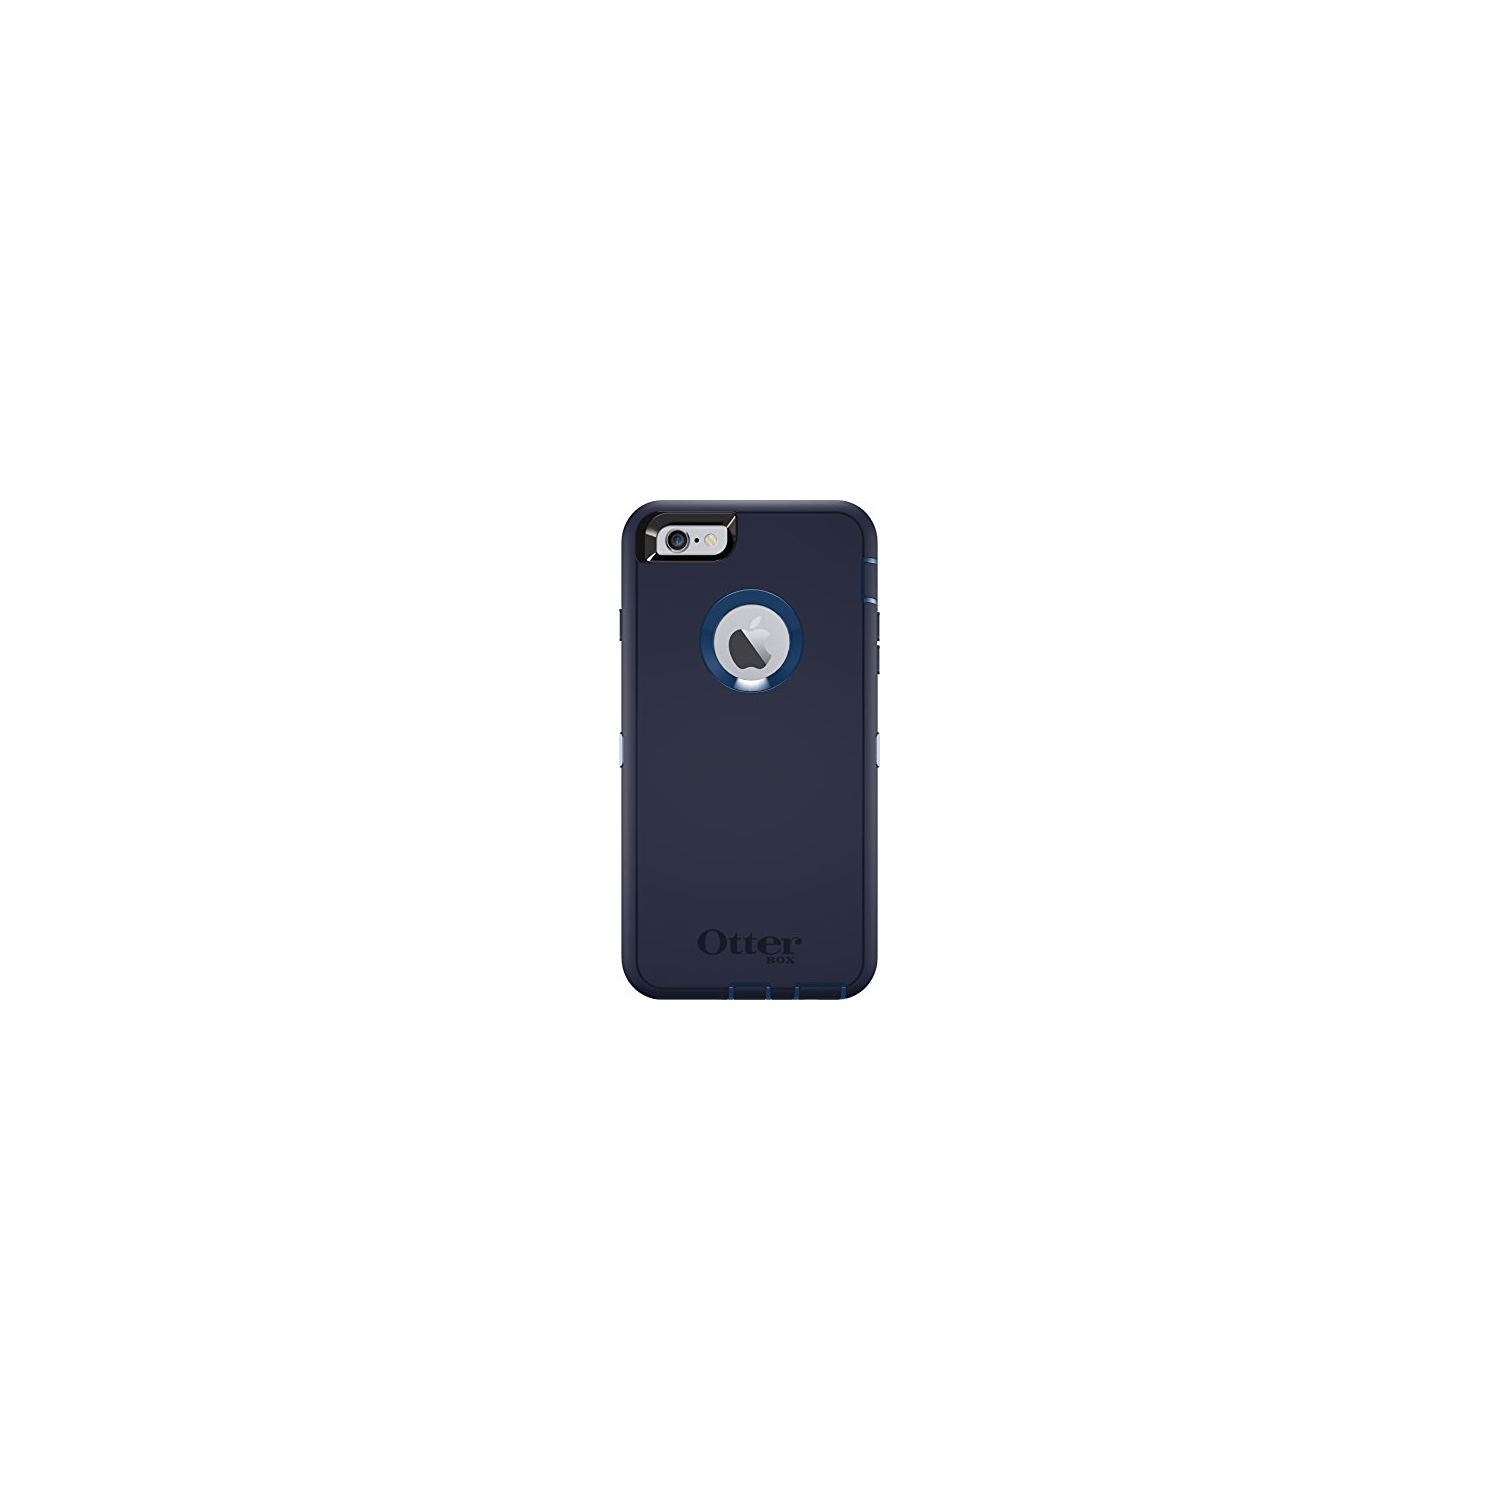 OtterBox DEFENDER iPhone 6 Plus/6s Plus Case - INDIGO HARBOR (ROYAL BLUE/ADMIRAL BLUE)